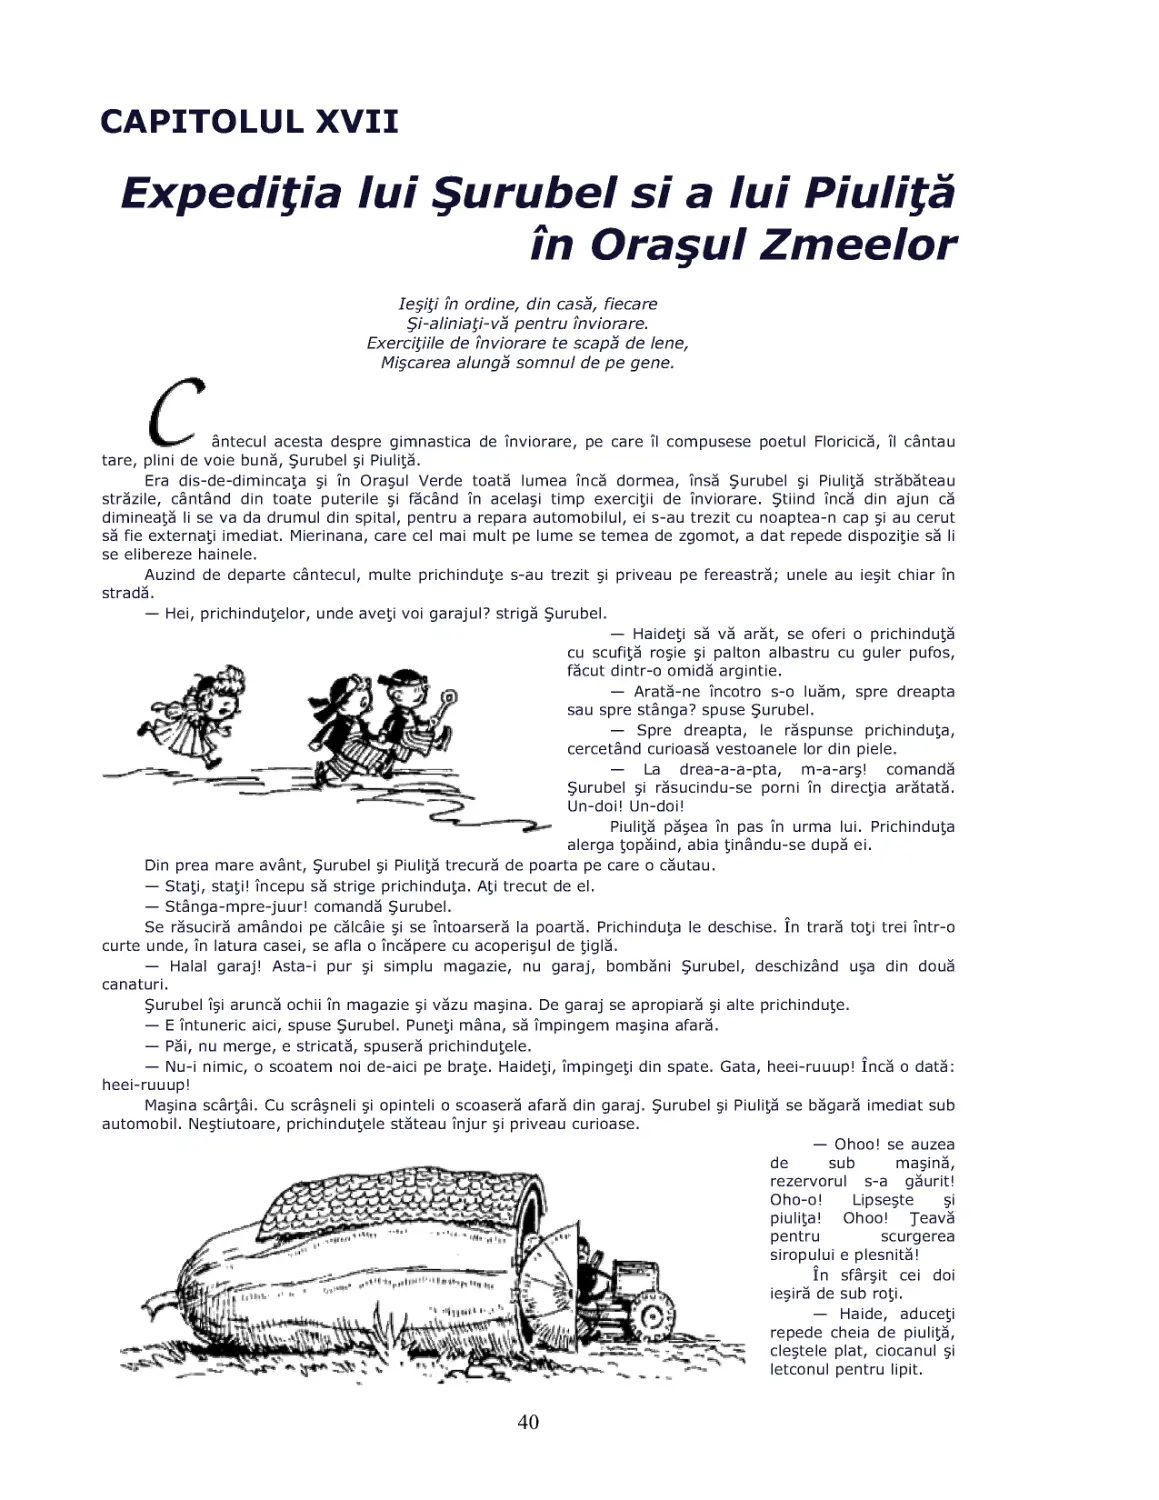 Cap.XVII Expeditia lui Surubel si a lui Piulita in Orasul Zmeelor